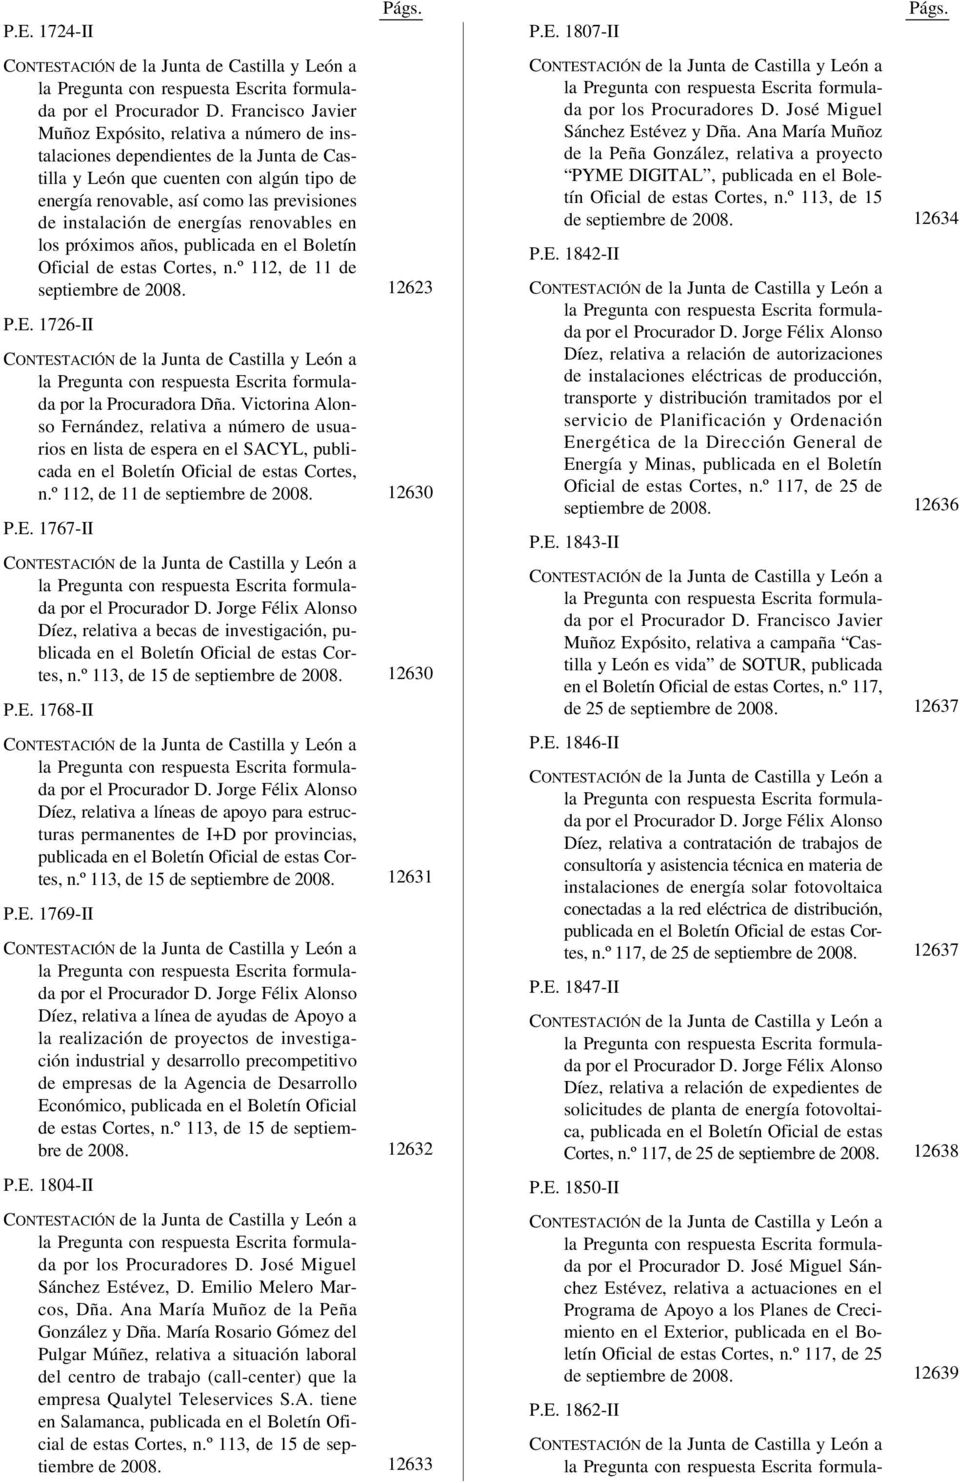 instalación de energías renovables en los próximos años, publicada en el Boletín Oficial de estas Cortes, n.º 112, de 11 de septiembre de 2008. P.E. 1726-II por la Procuradora Dña.